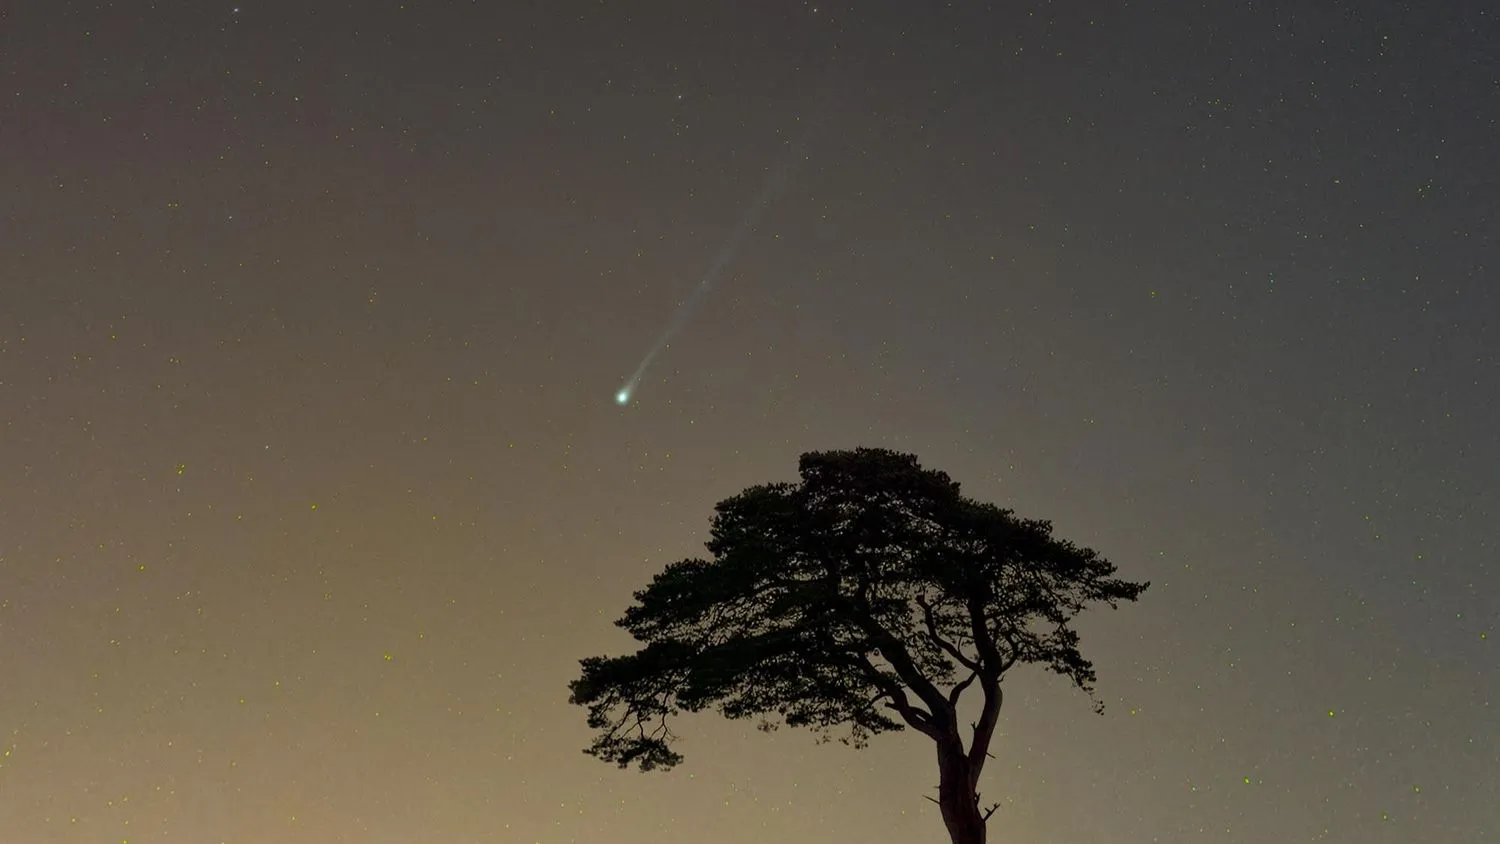 Komet 12P/Pons-Brooks erscheint als grüner Streifen am Himmel über einem einzelnen silhouettierten Baum